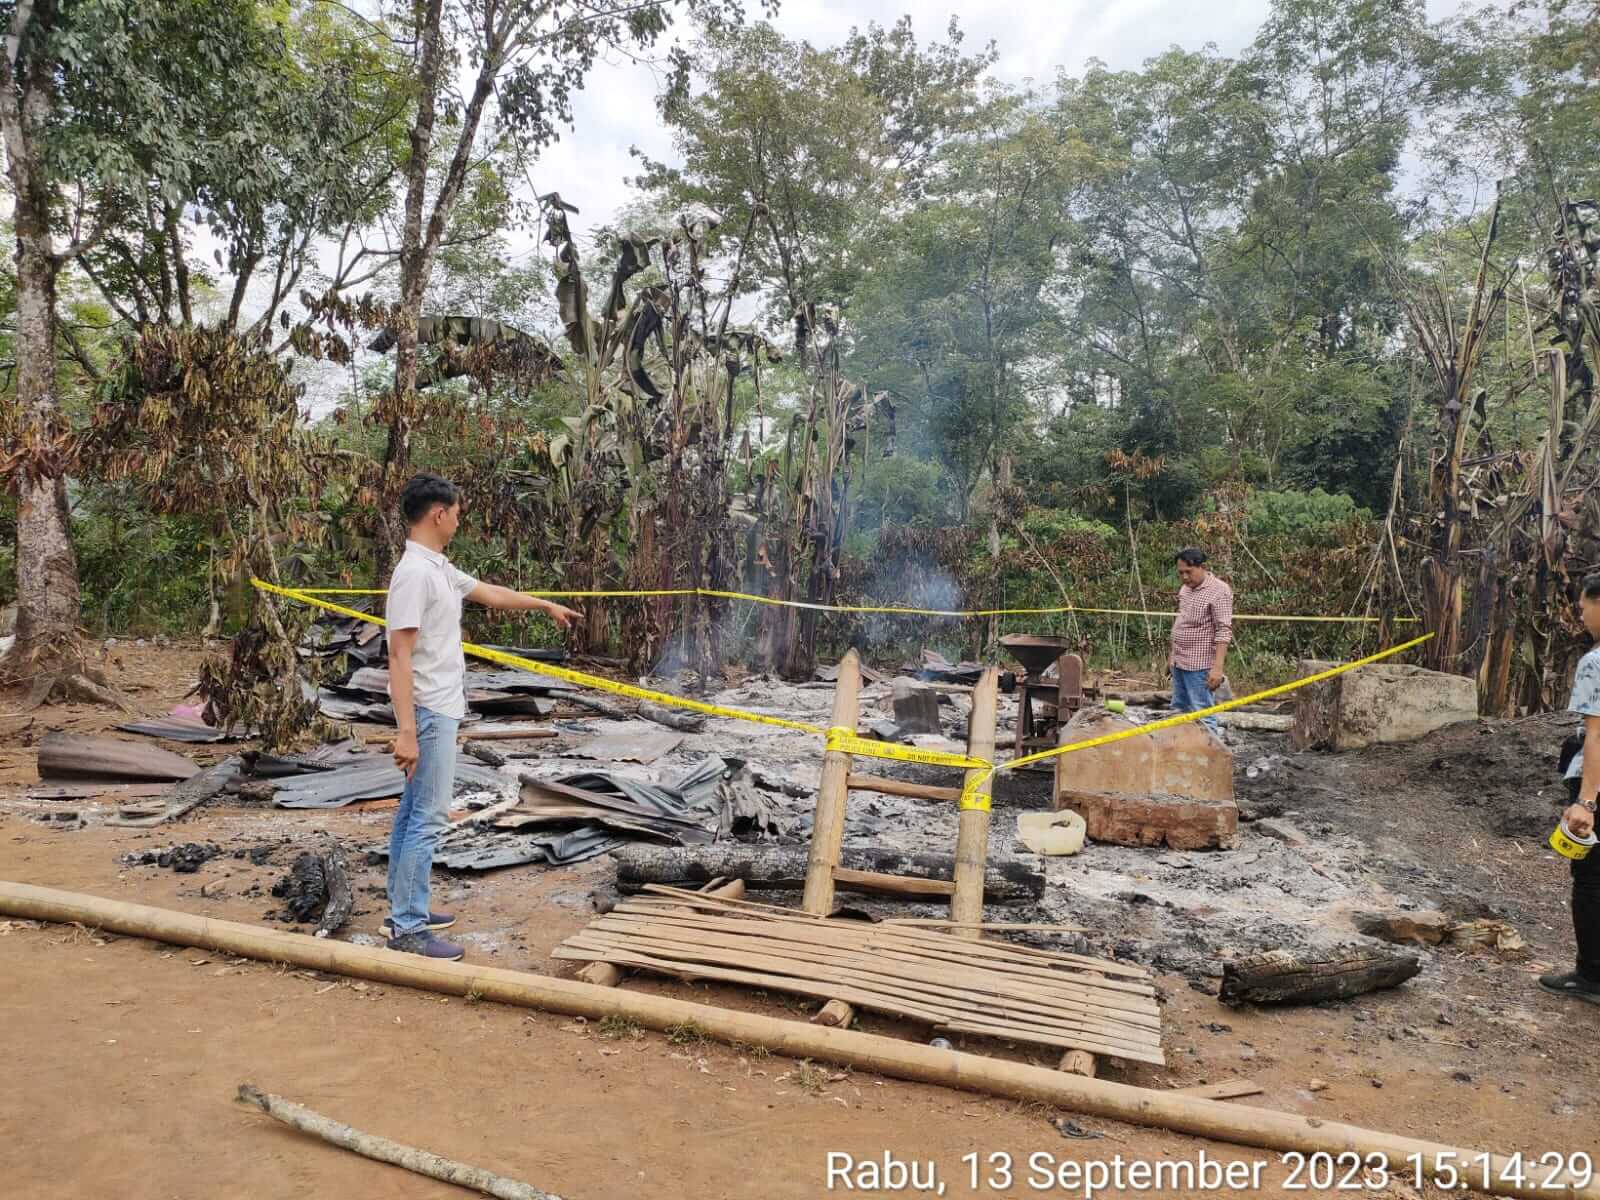  BREAKING NEWS: Petani Kota Padang Tewas Terpanggang dalam Pondok